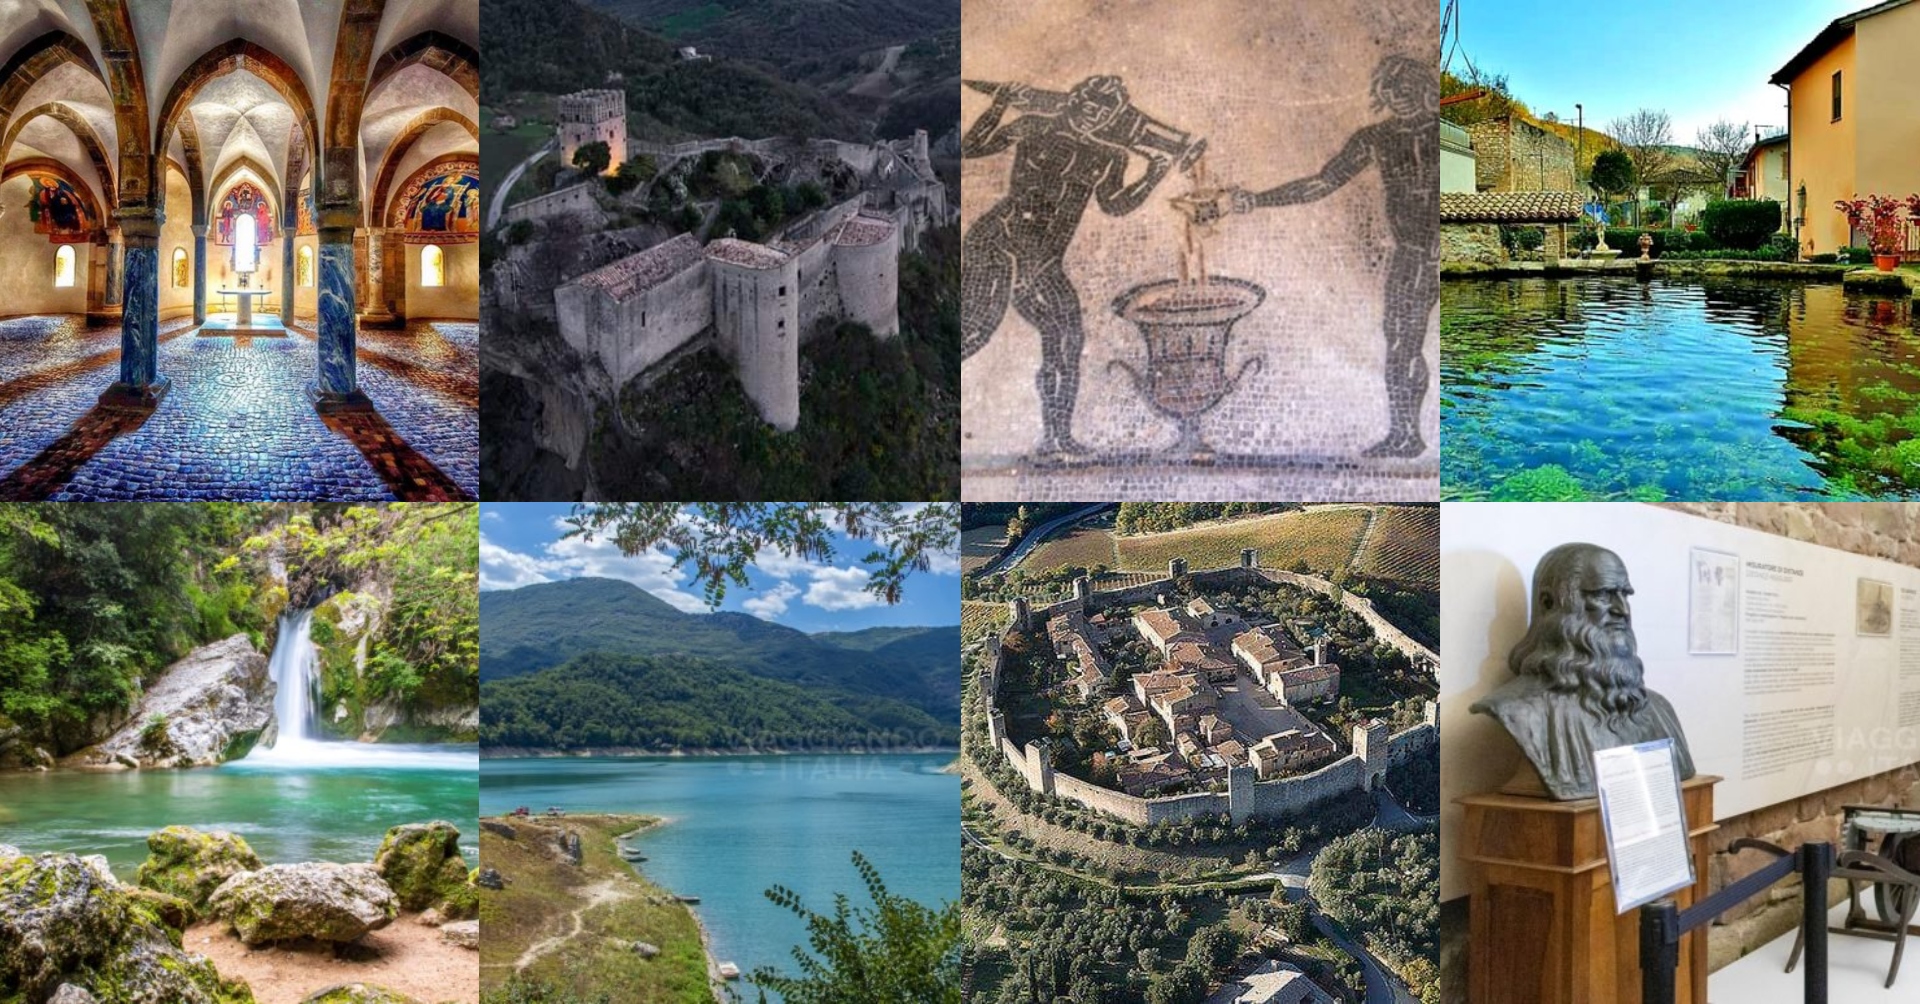 Cosa visitare a Gennaio in Abruzzo, Lazio, Umbria e Toscana